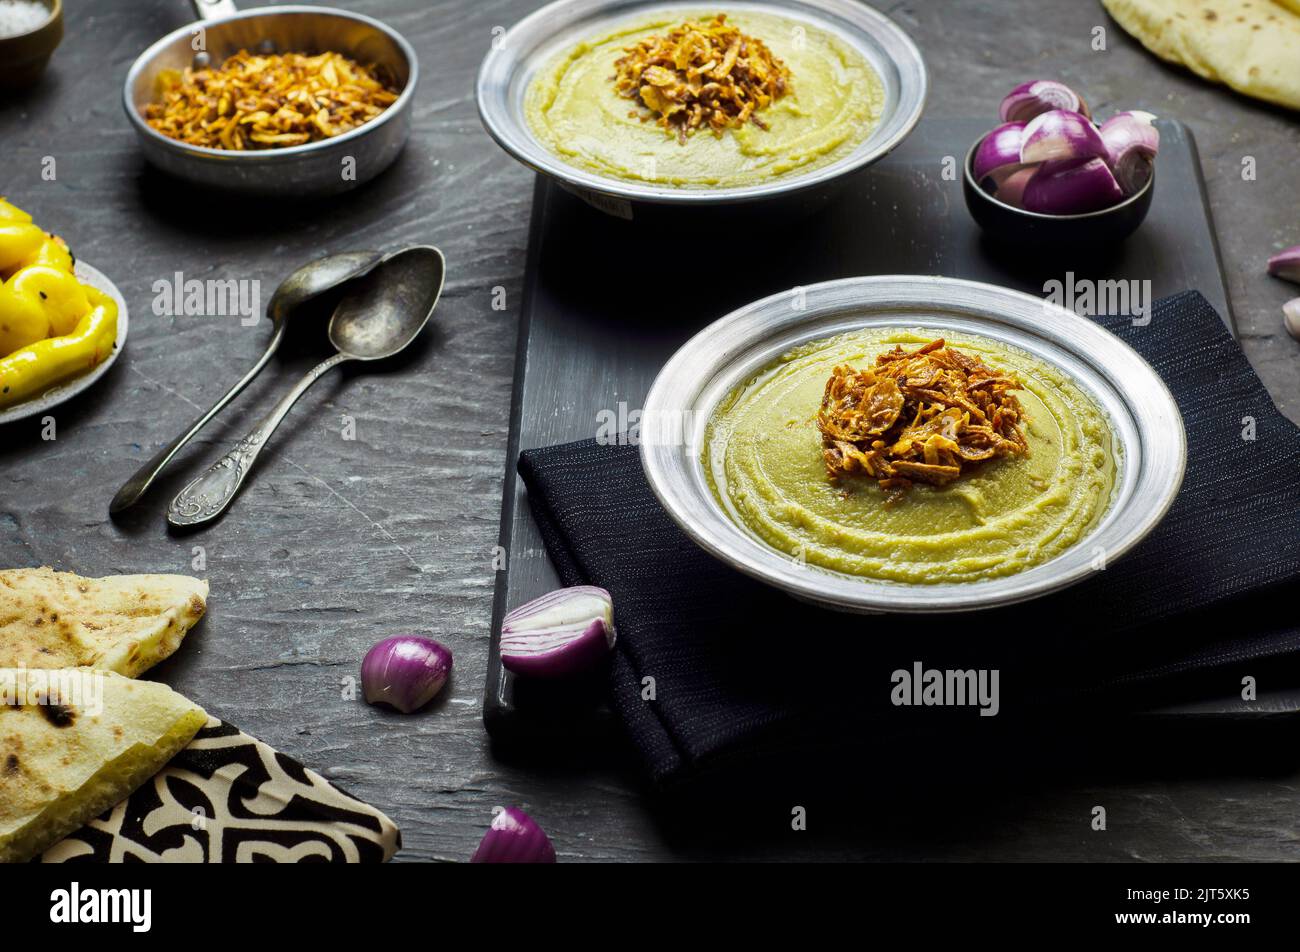 Cucina araba, fave egiziane e salsa alle erbe (Bessara). Contiene fave, cipolla, aglio ed erbe fresche. Foto Stock